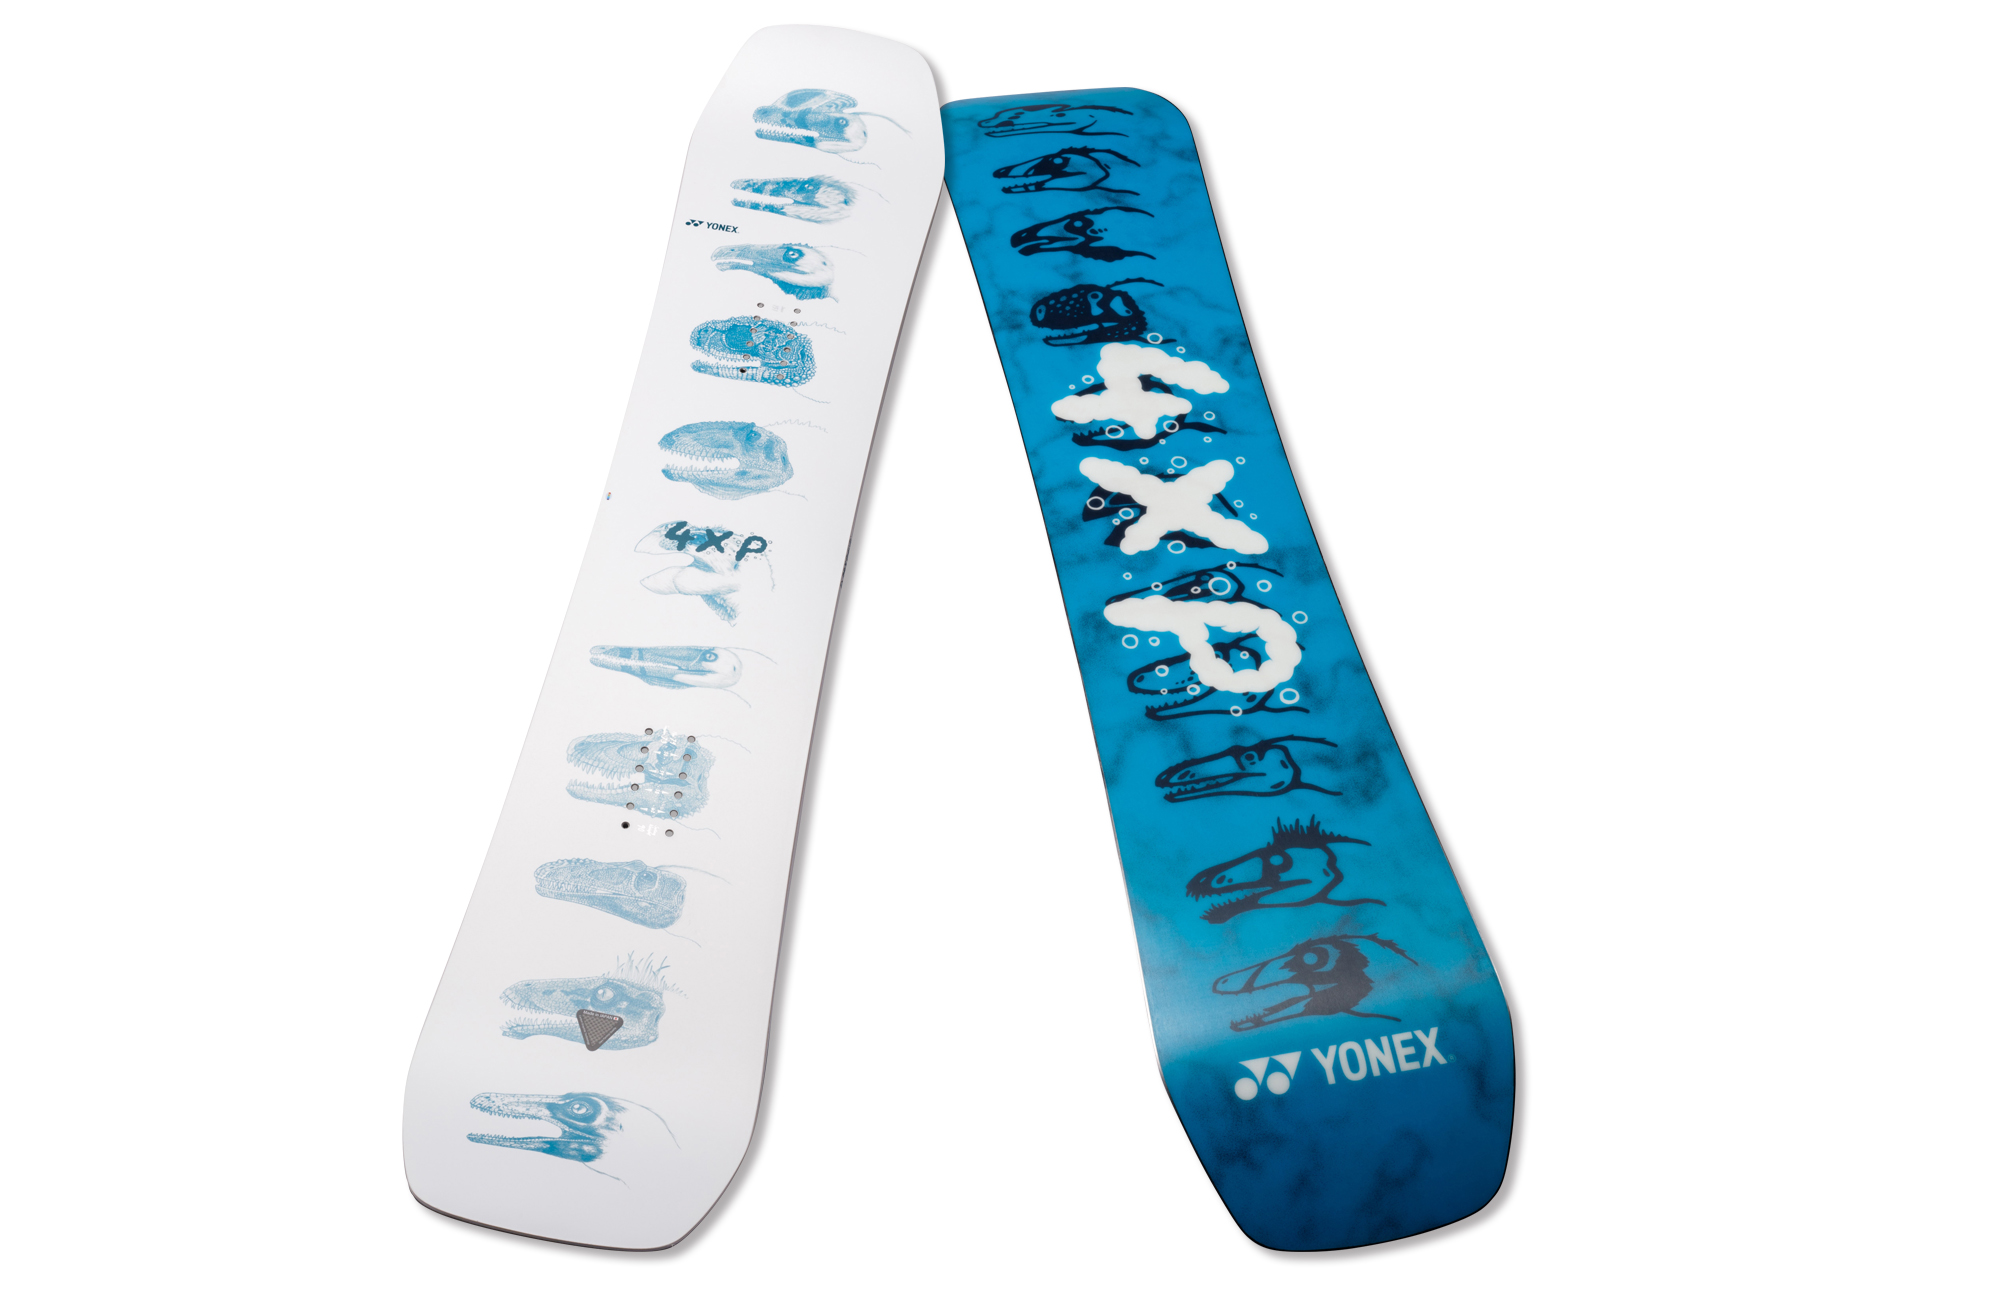 YONEX's attention-grabbing board !! 4XP / 4XP POWTWIN ~ Choose one 